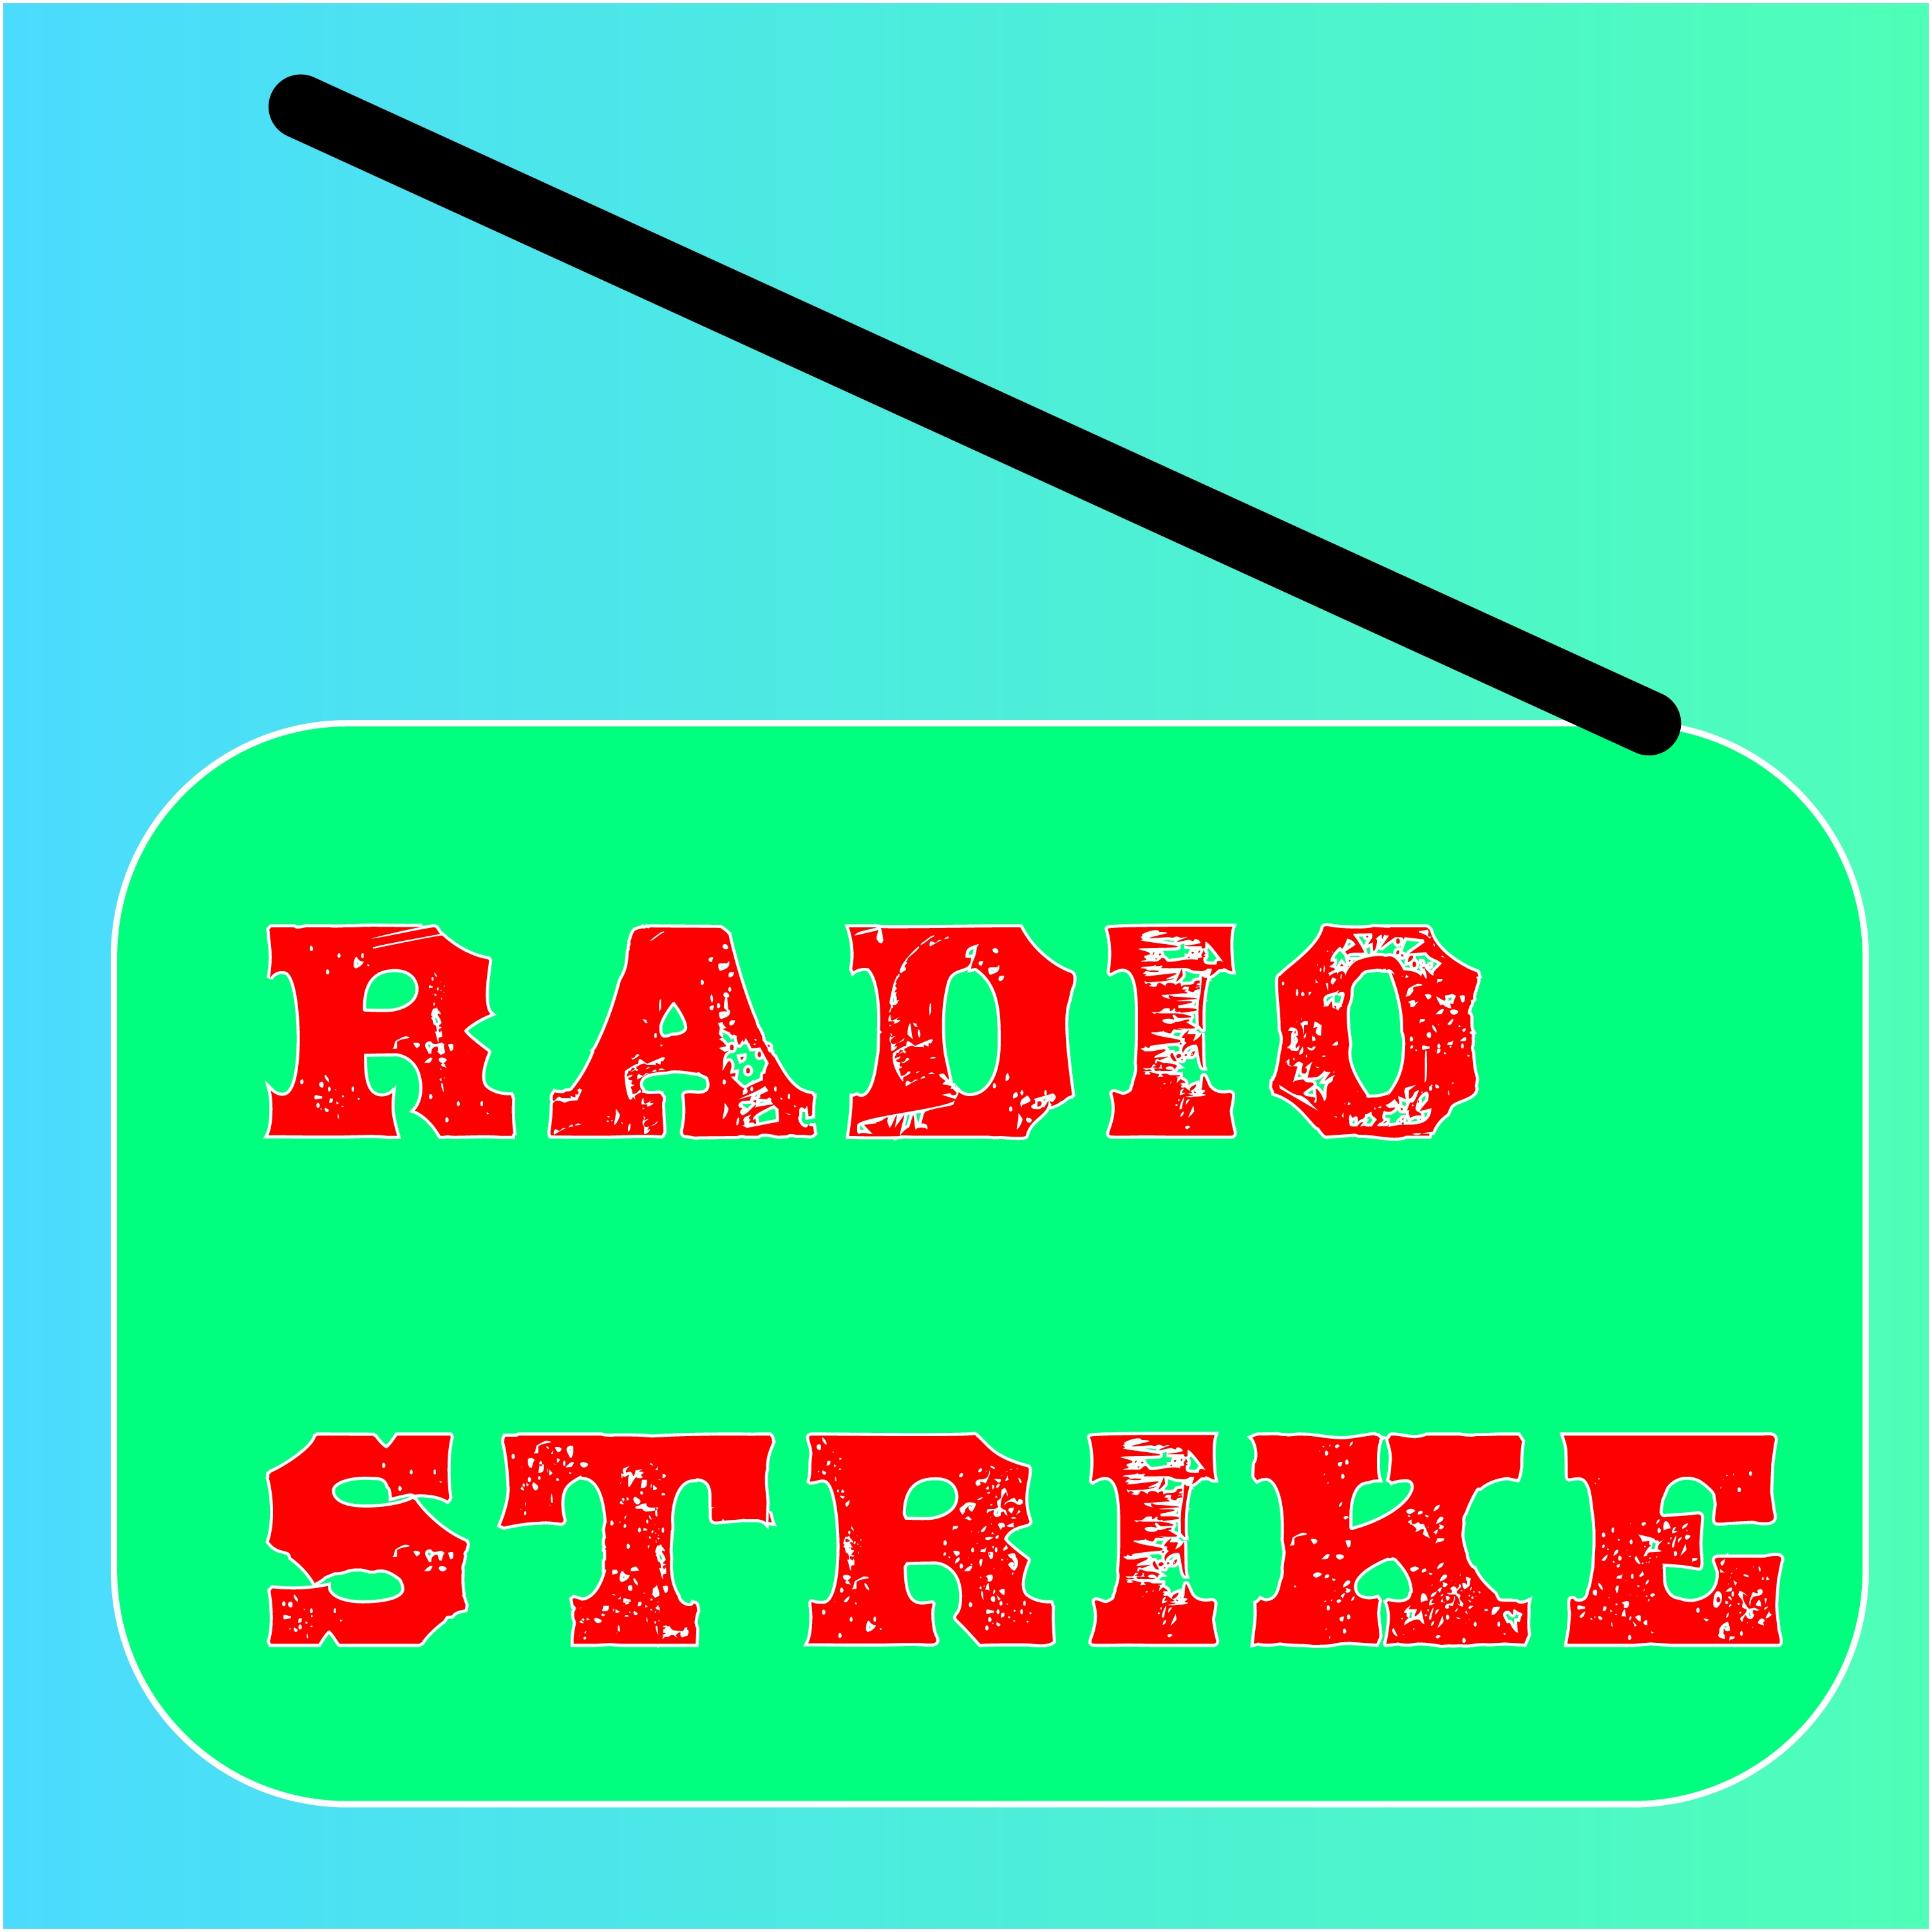 RadioStrike#23(りーろぐCAST#2)5G対応GooglePixel発表